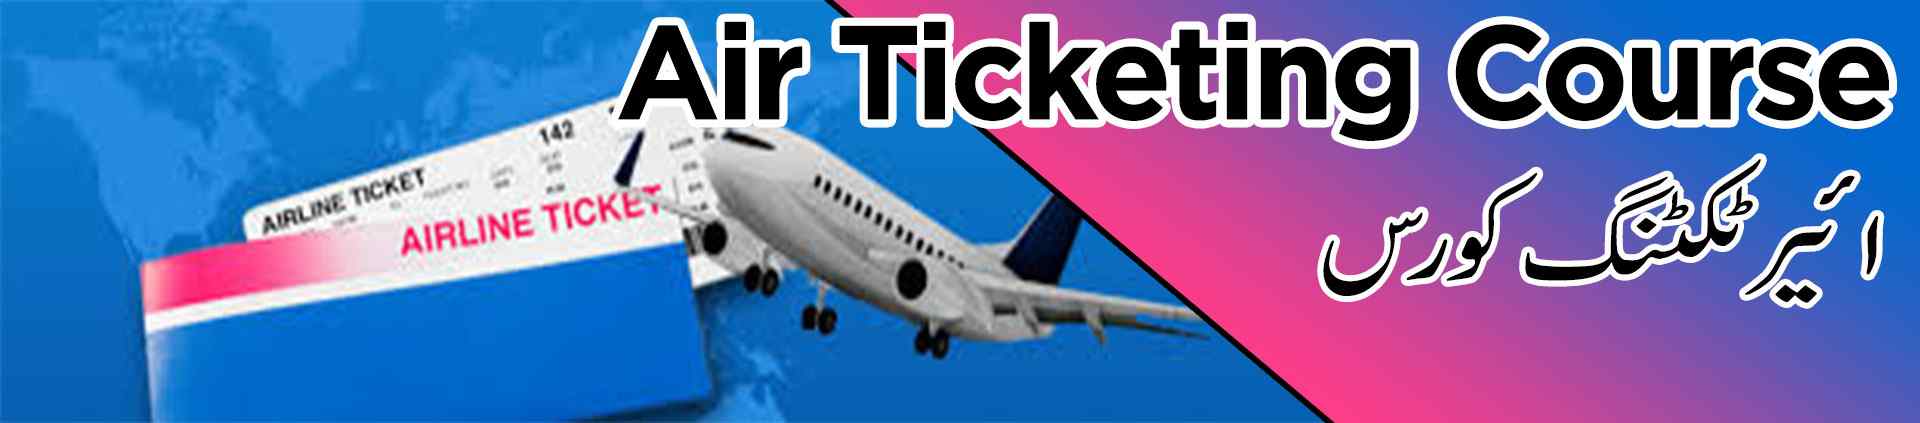 air ticketing course multan